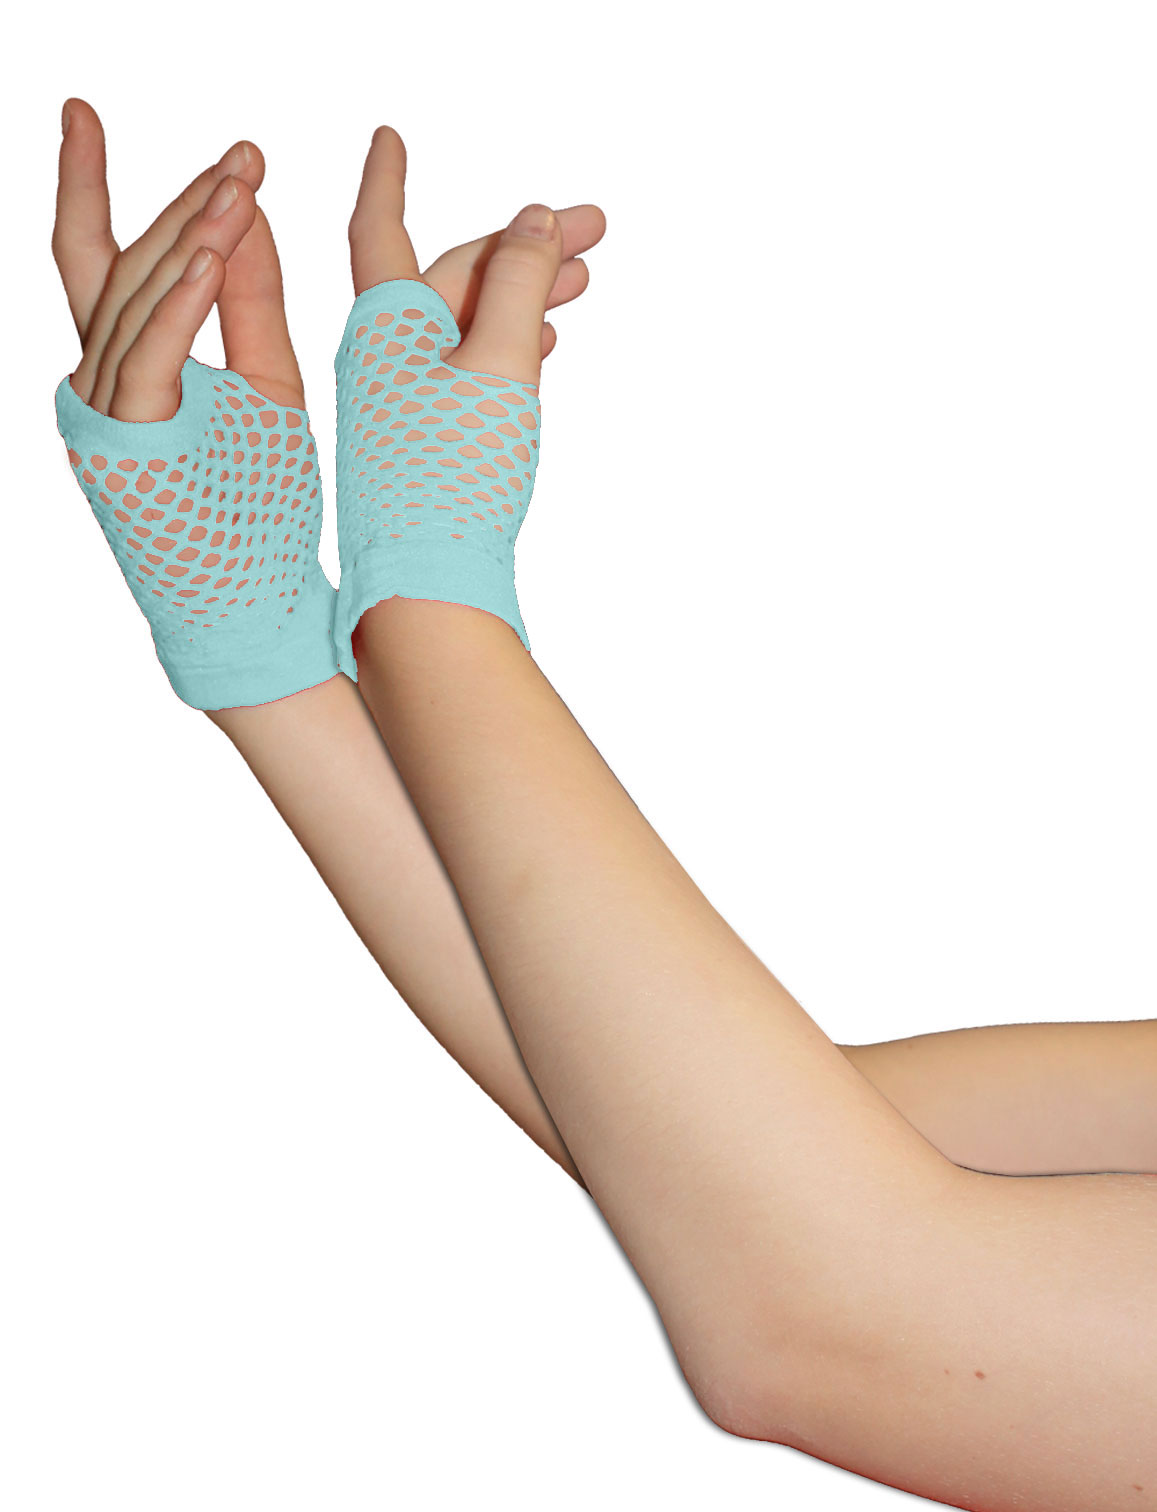 Wickedfun Light Blue Fingerless Short Fishnet Gloves (Pack of 12 pairs)